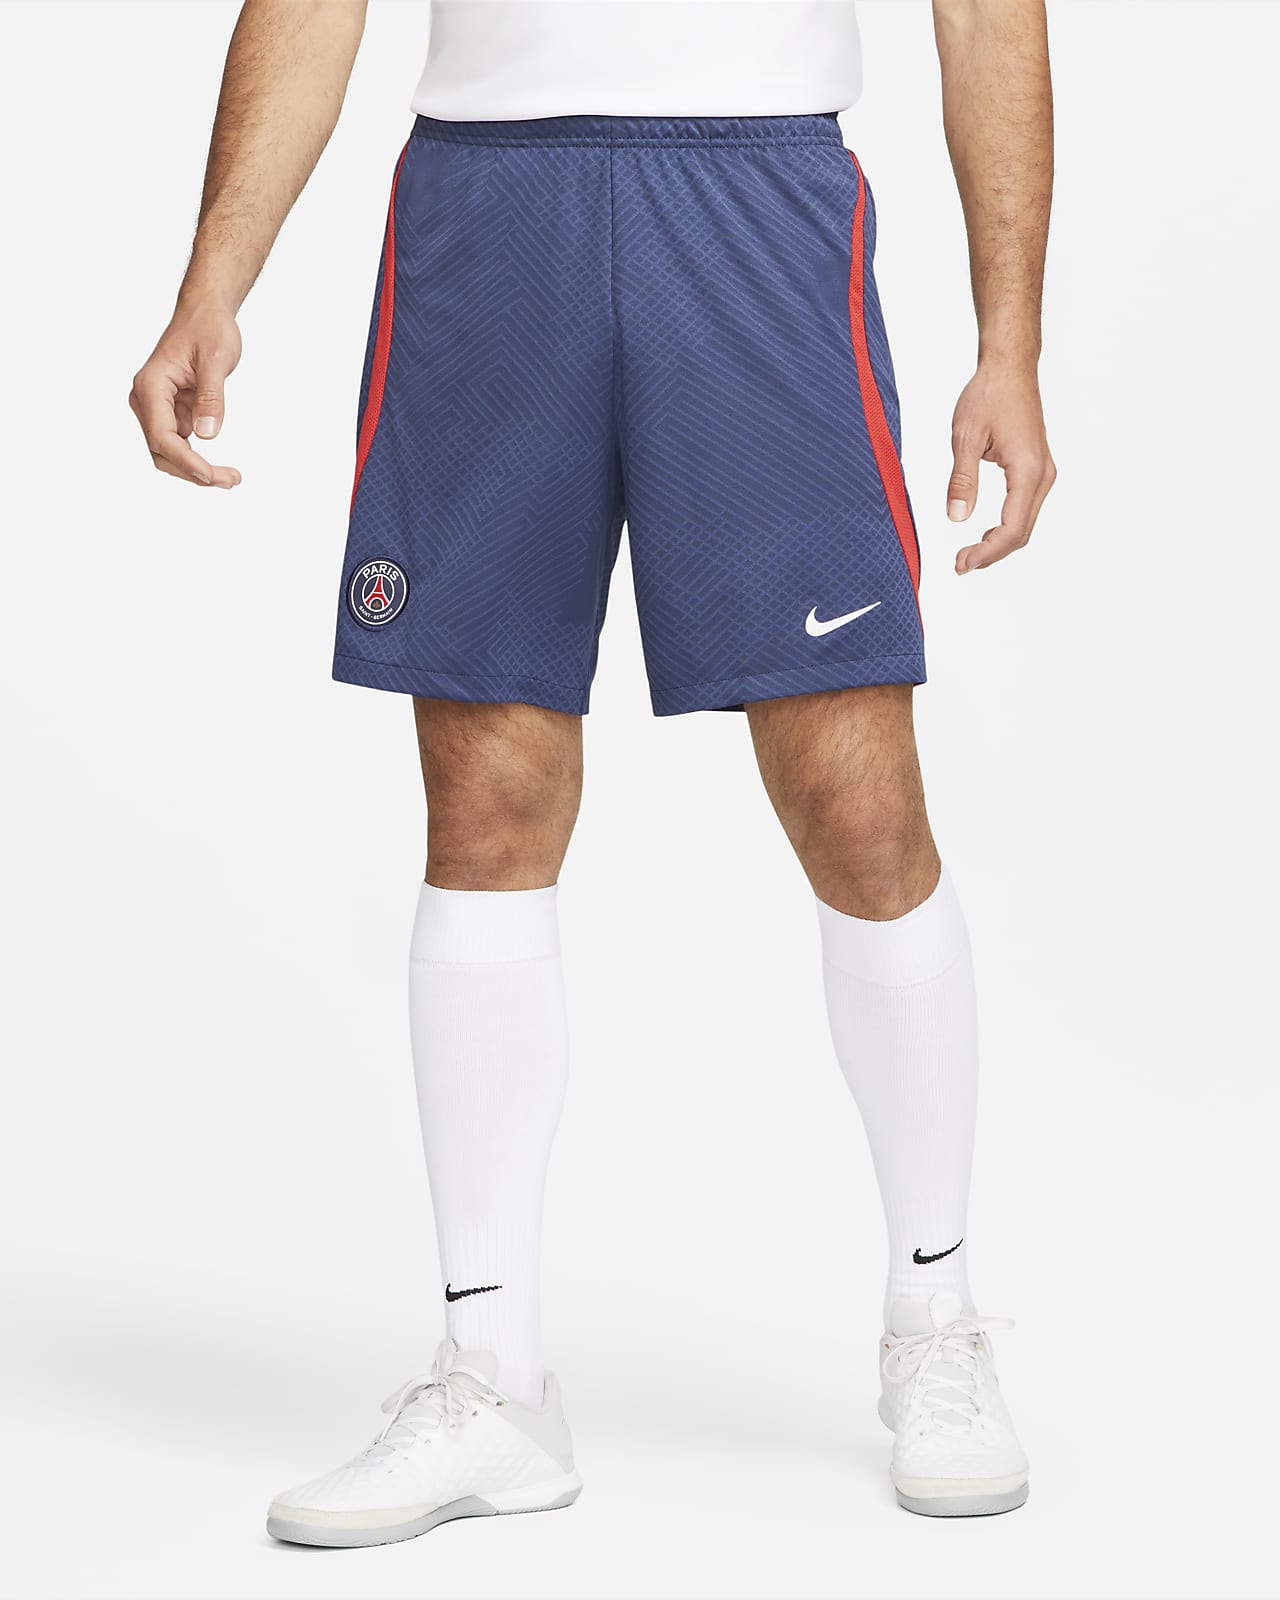 testigo Ingenieros Desafío Shorts de fútbol para hombre Nike Dri-FIT Paris Saint-Germain Strike. Nike .com